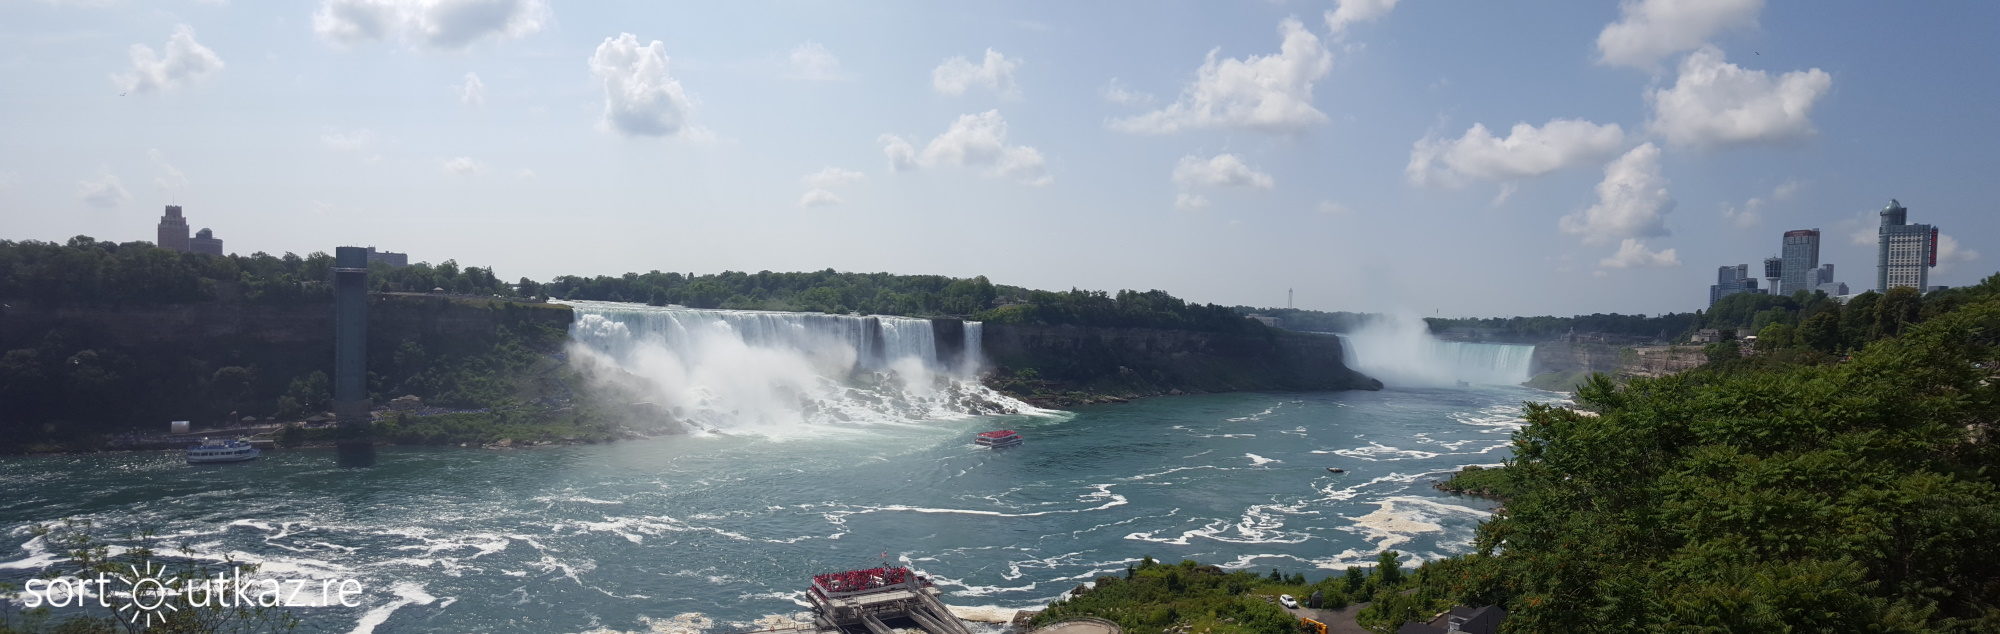 Chutes du Niagara - Panorama 1